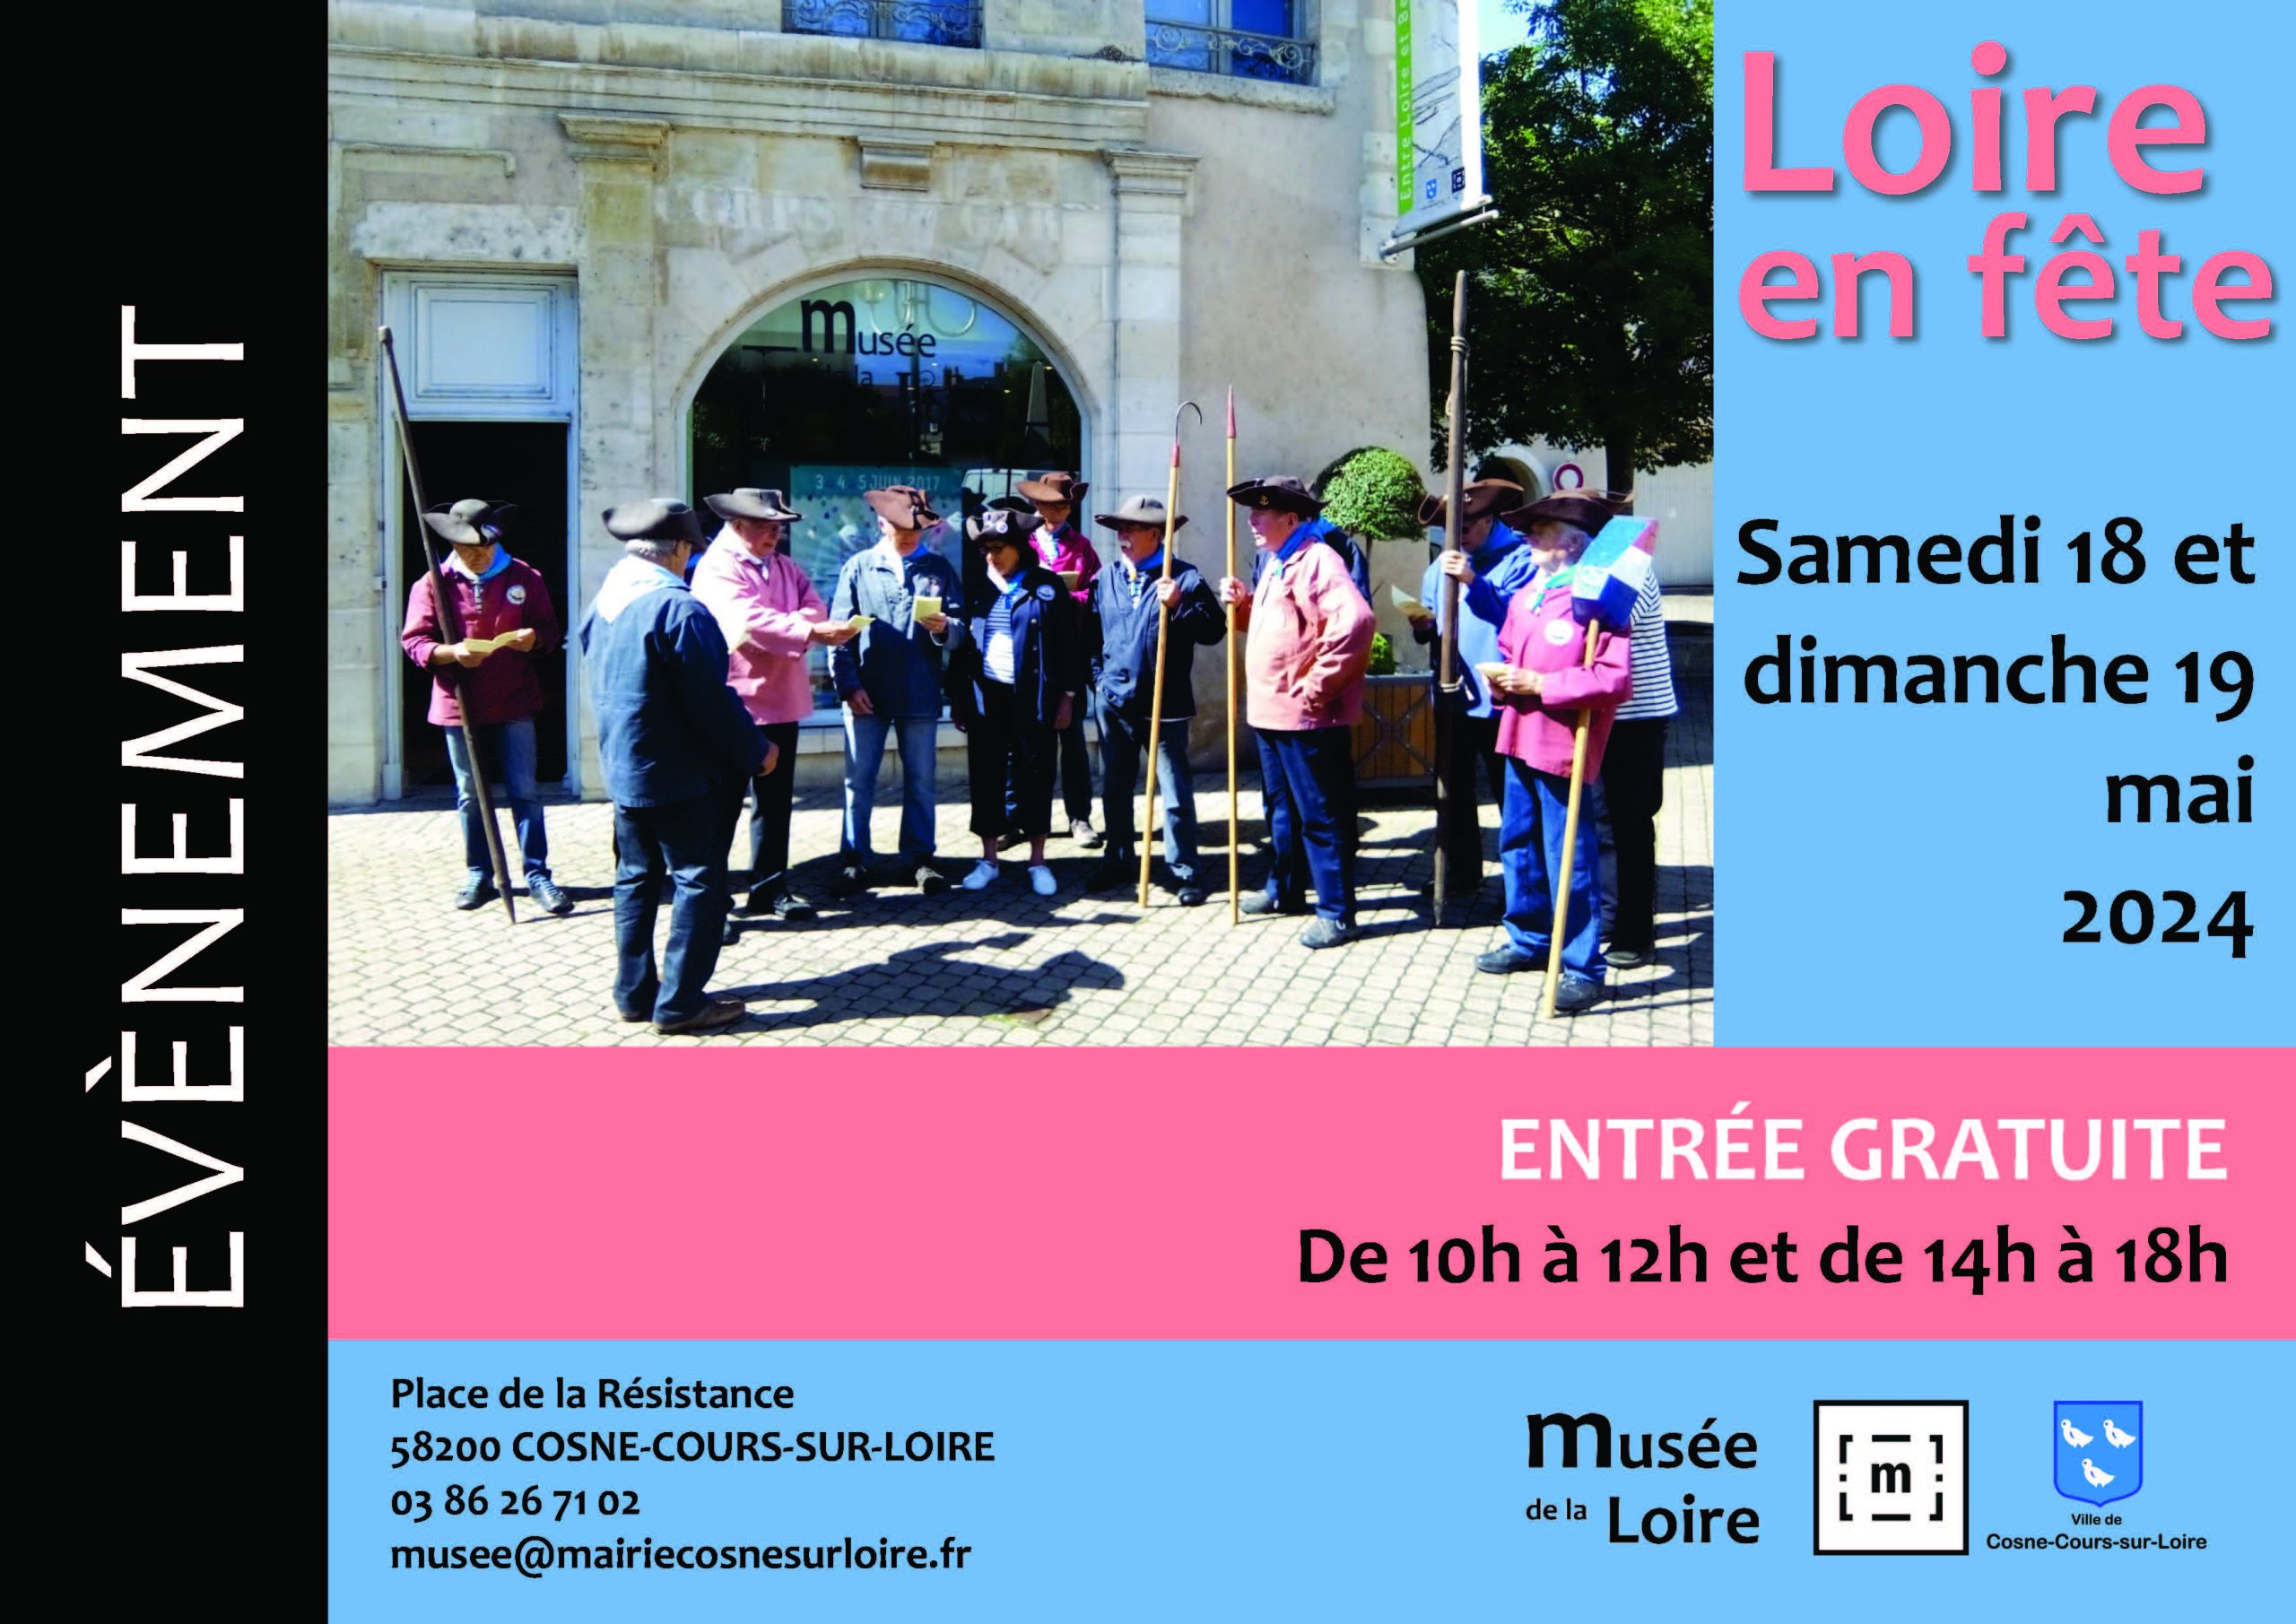 Loire en fête au Musée de la Loire de Cosne-Cours-sur-Loire Samedi 18 et dimanche 19 mai 2024 de 10h à 12h et de 14h à 18h GRATUIT